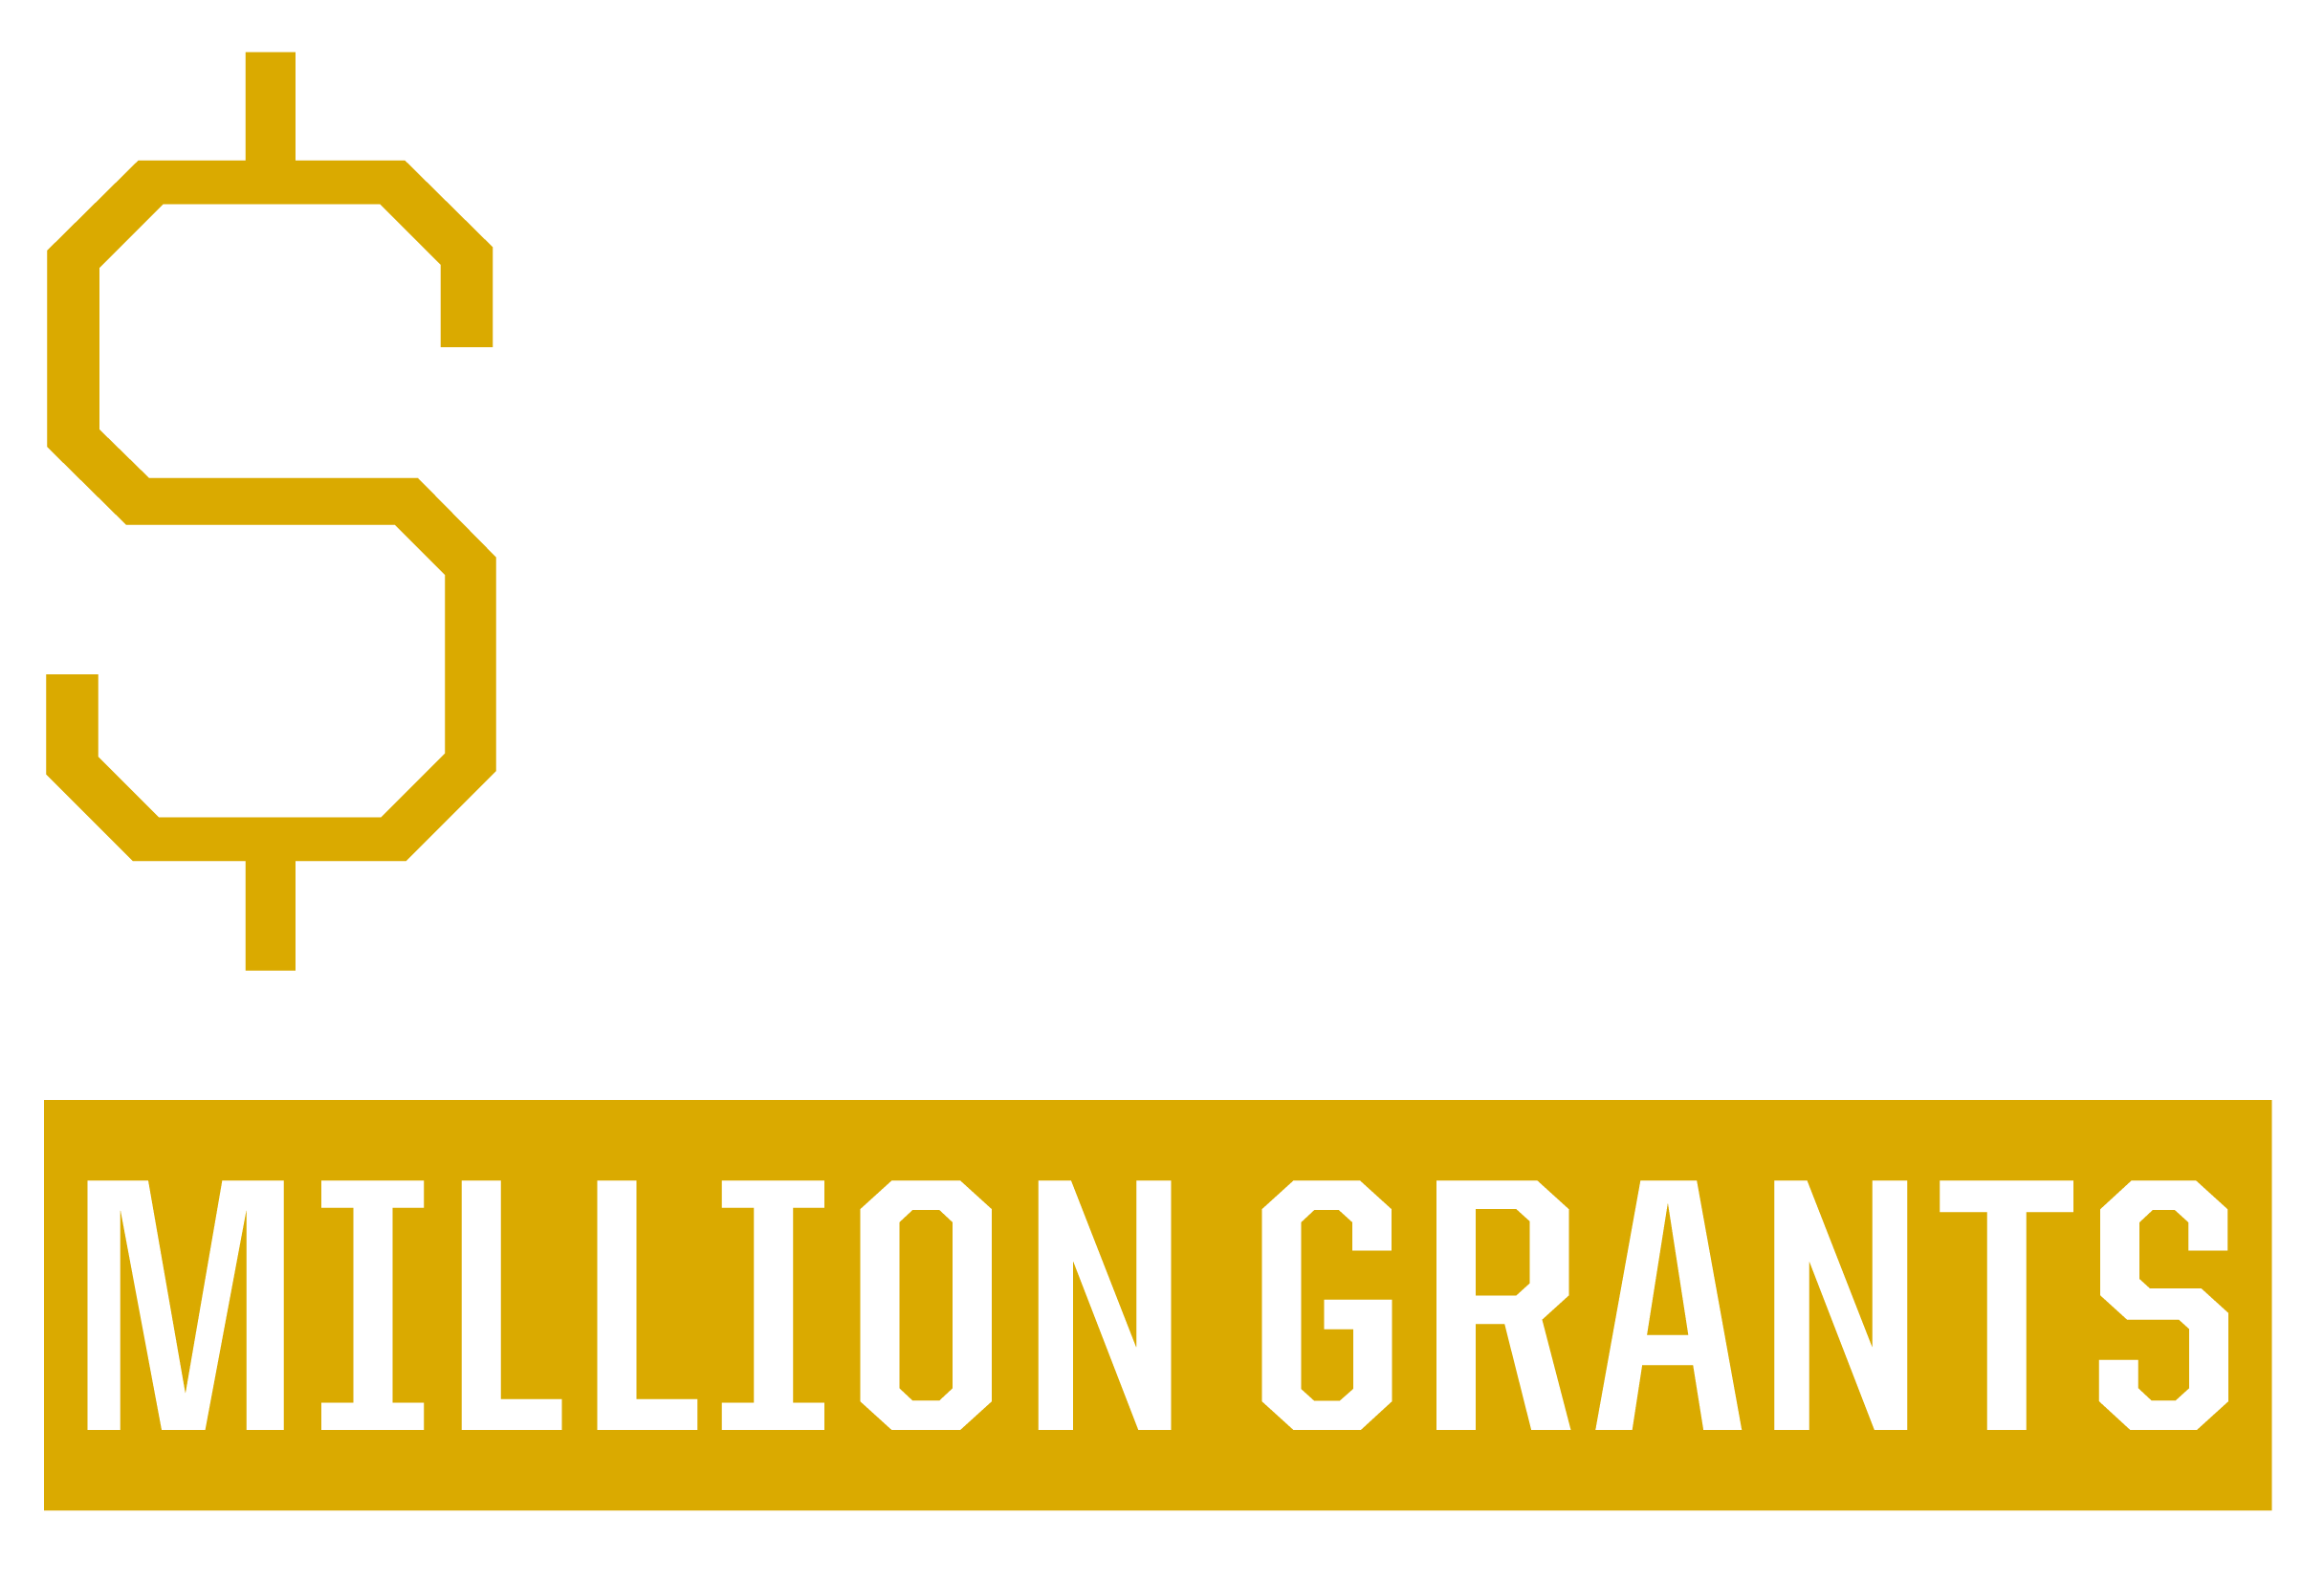 $1.0 million grants